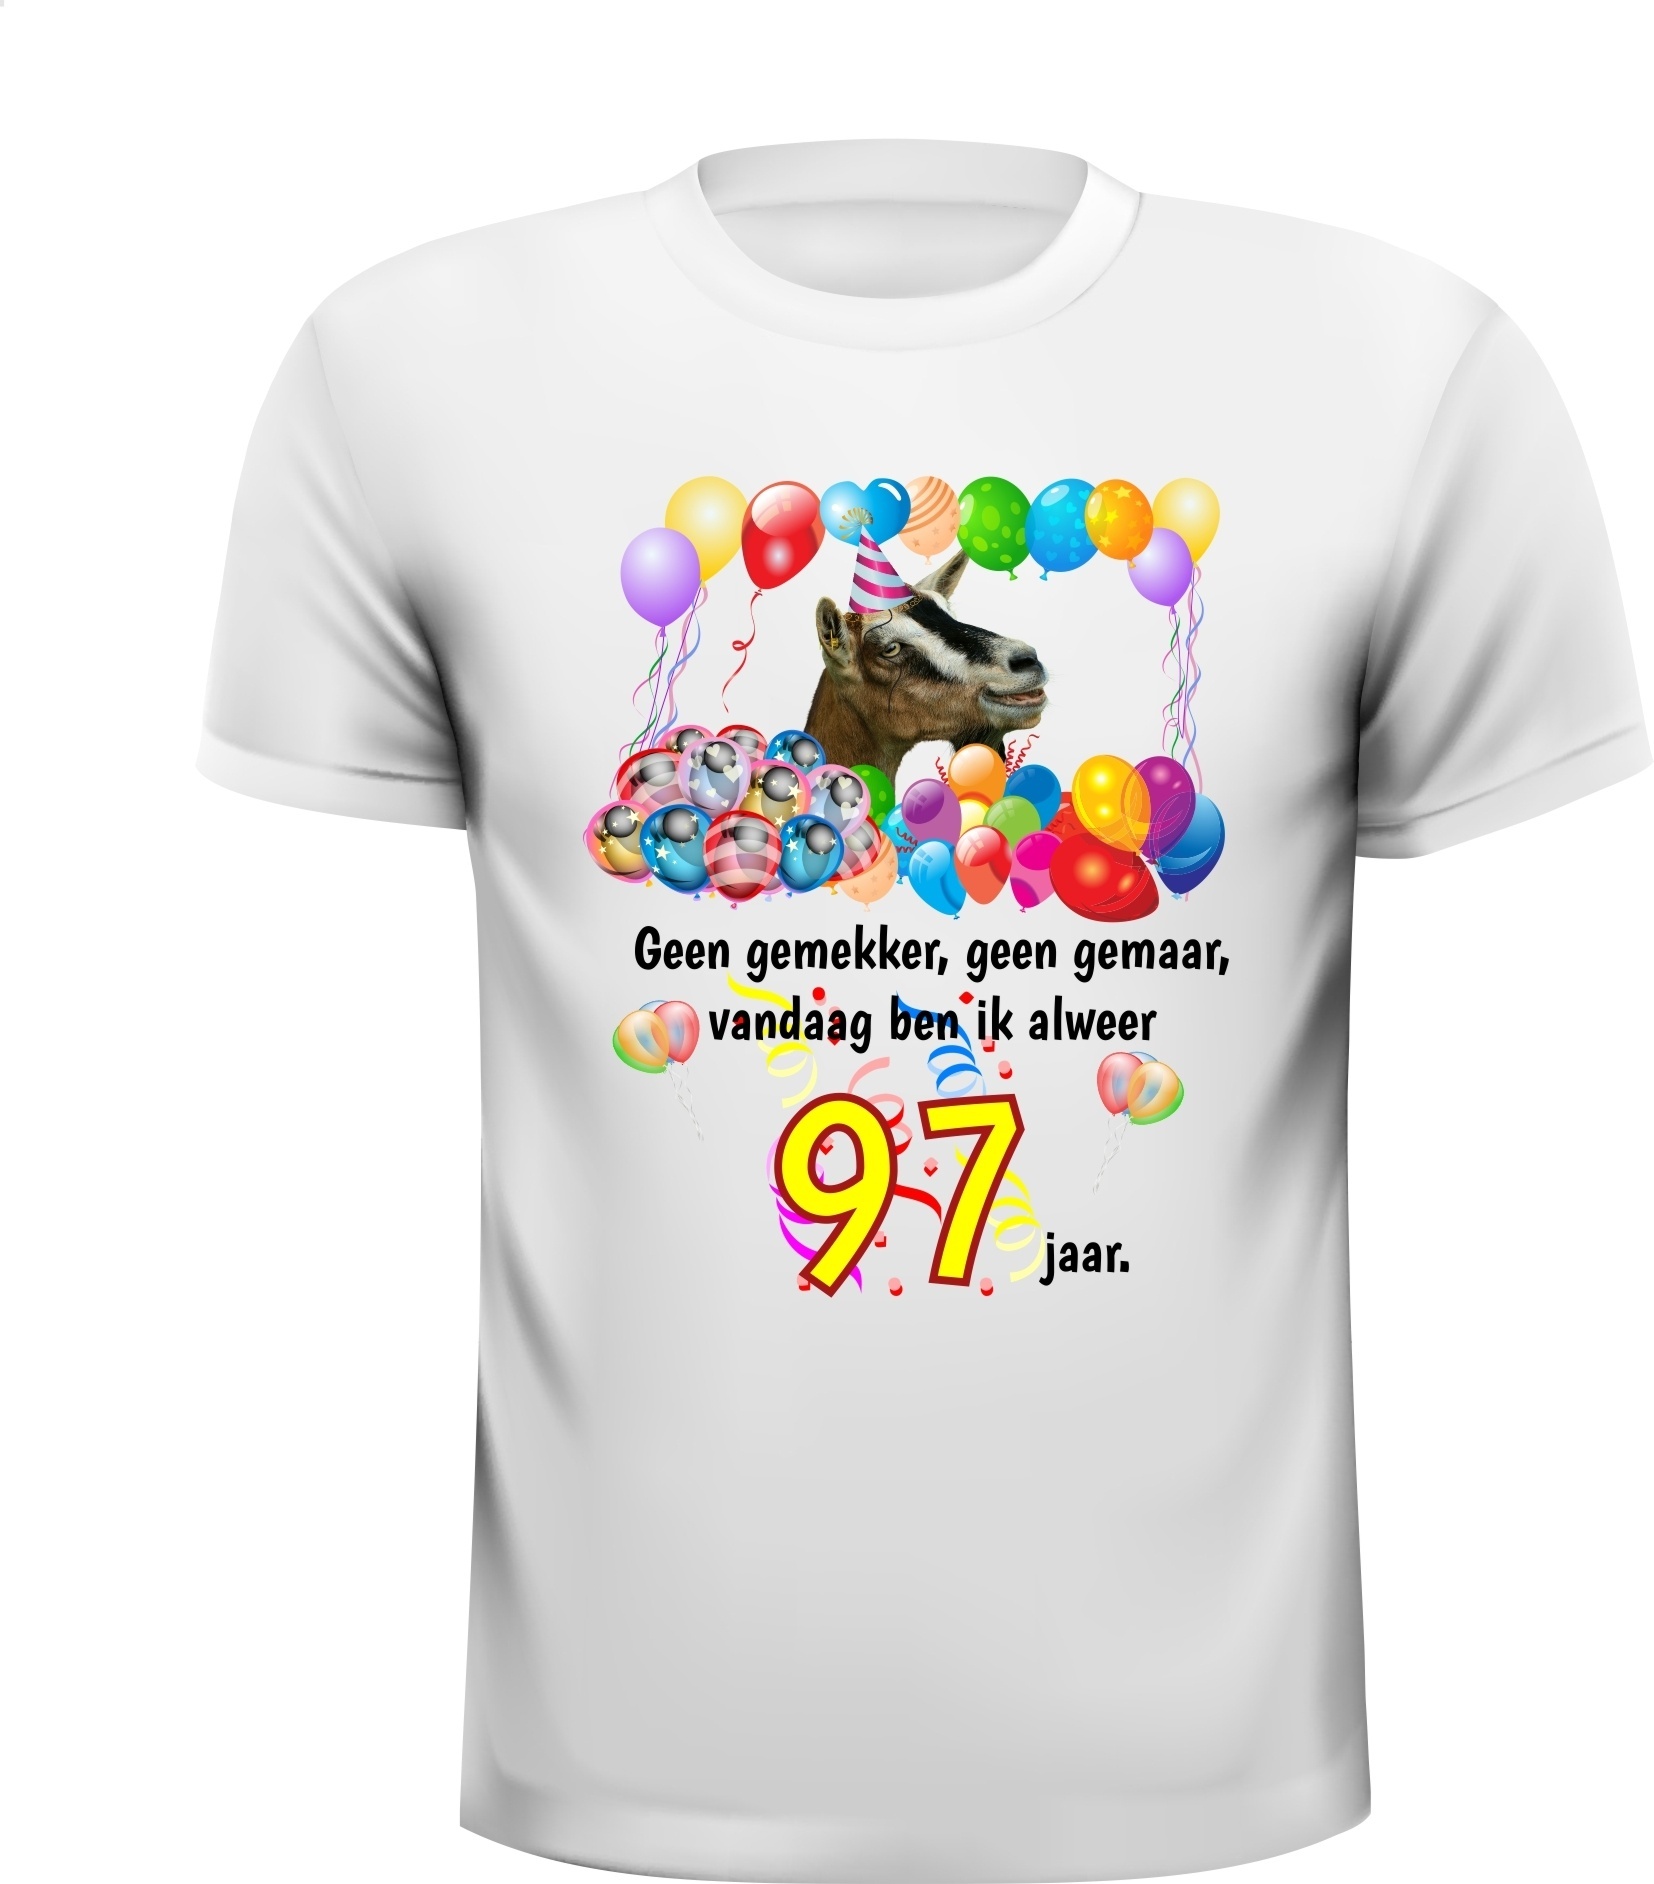 Verjaardag shirt 97 jaar leeftijd met grappige tekst en mooie feestelijke print